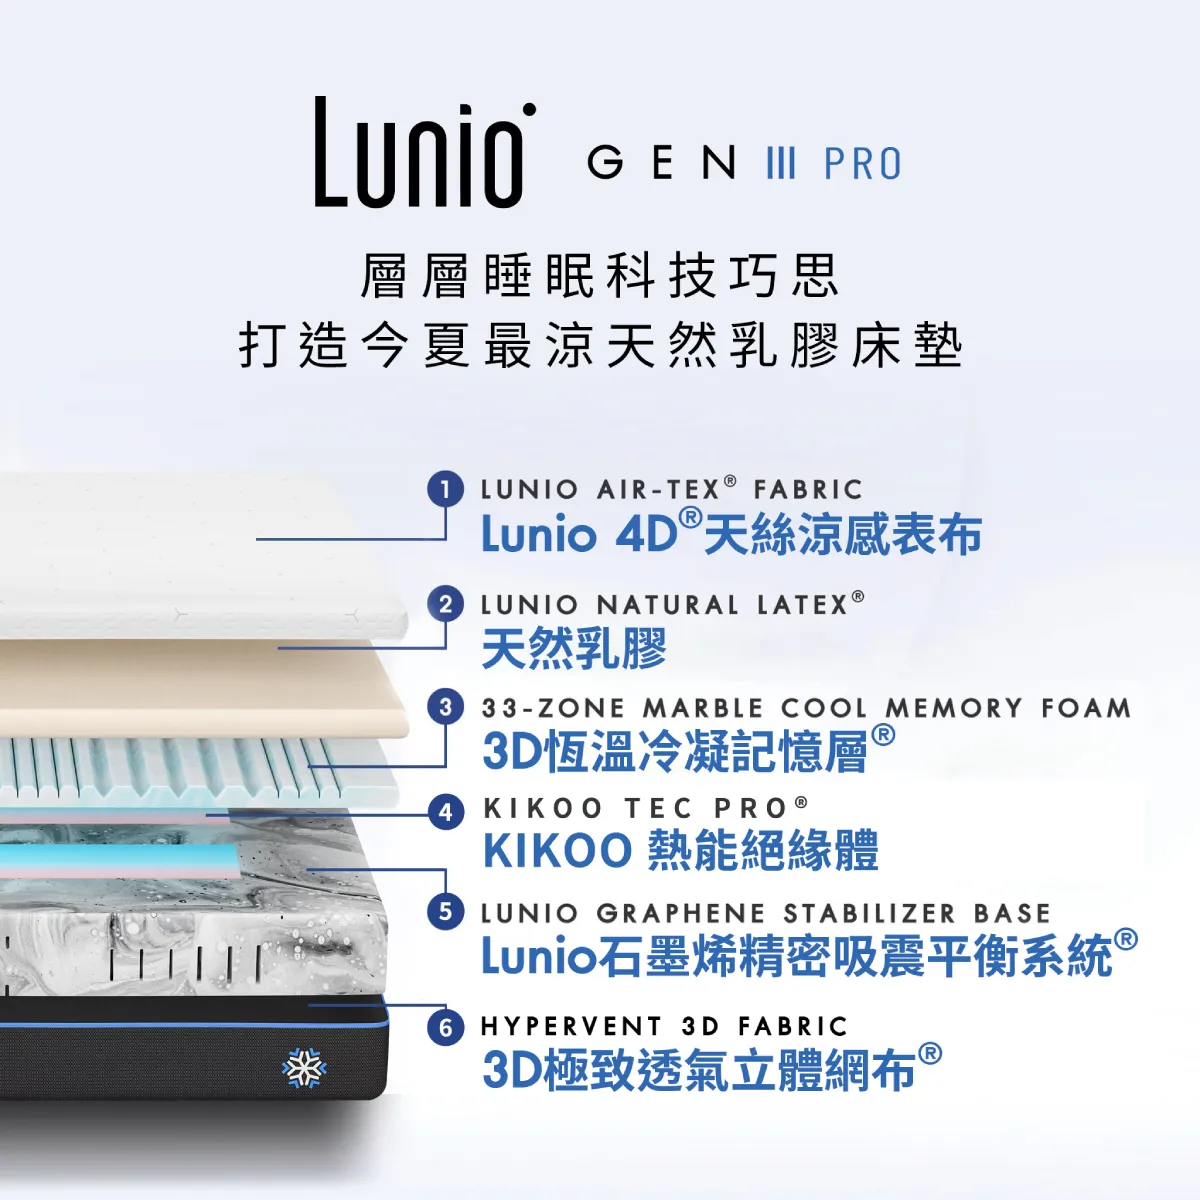 Lunio GEN3 PRO天然乳膠床墊結構